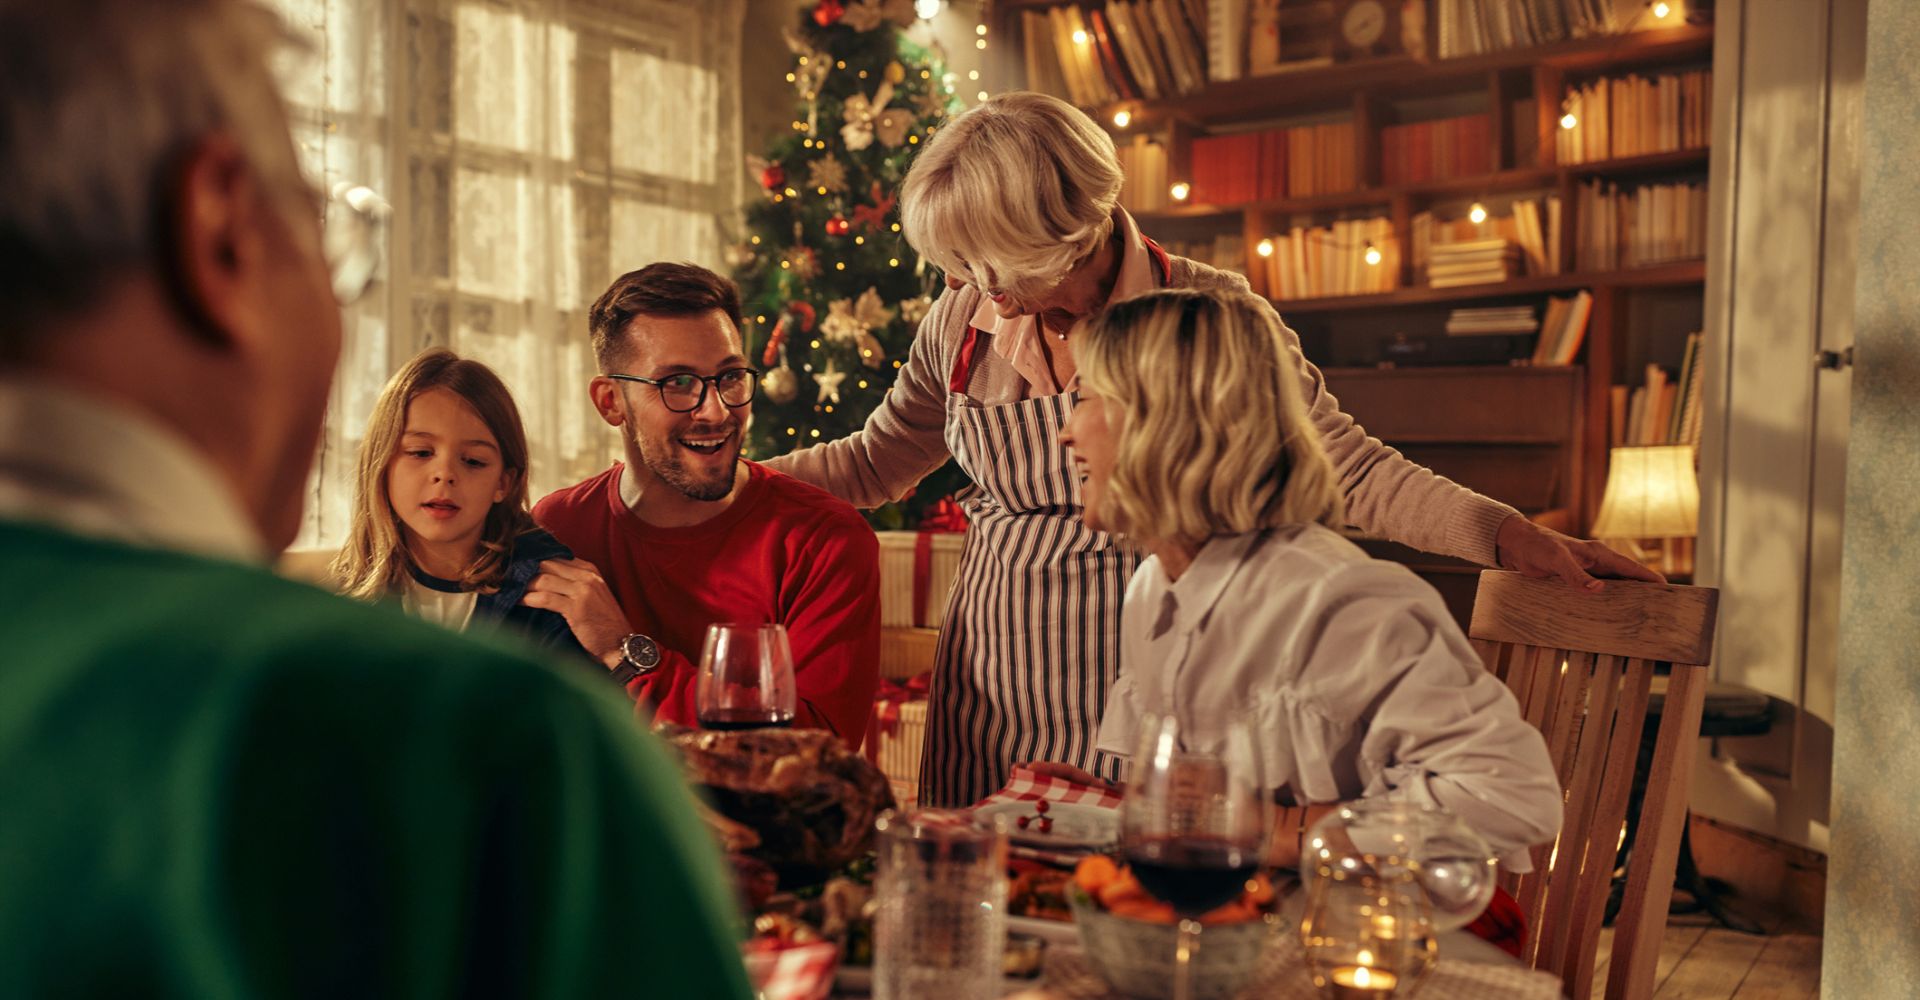 Una piccola scena imbarazzante durante la riunione di famiglia organizzata per il pranzo di Natale da una coppia con una bambina